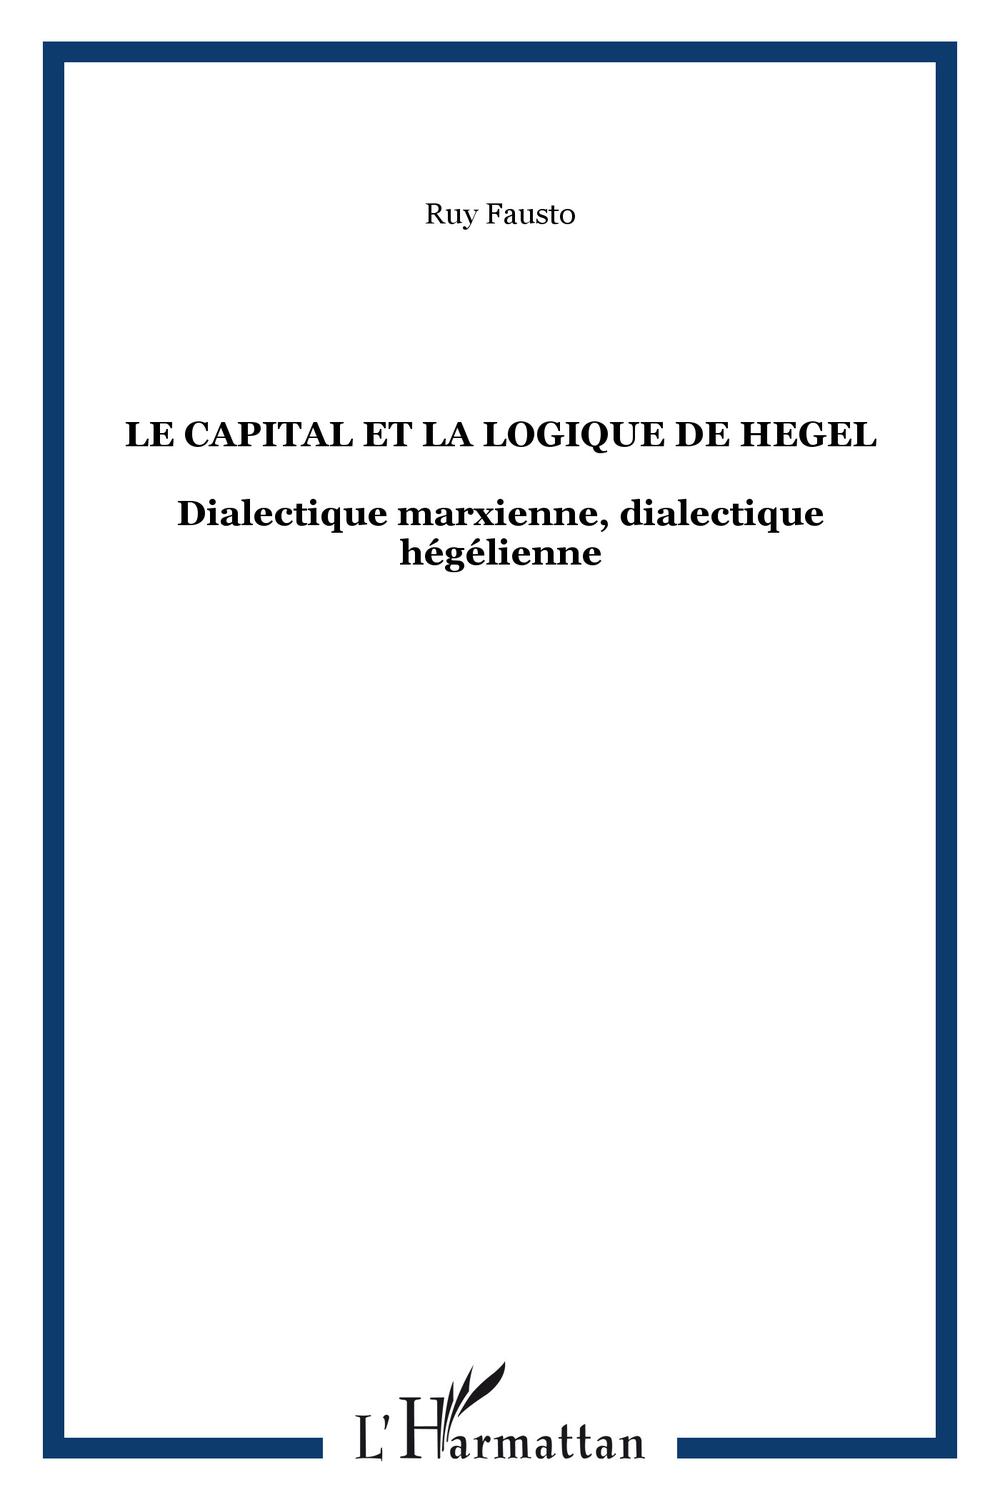 Le capital et la logique de Hegel - Ruy Fausto